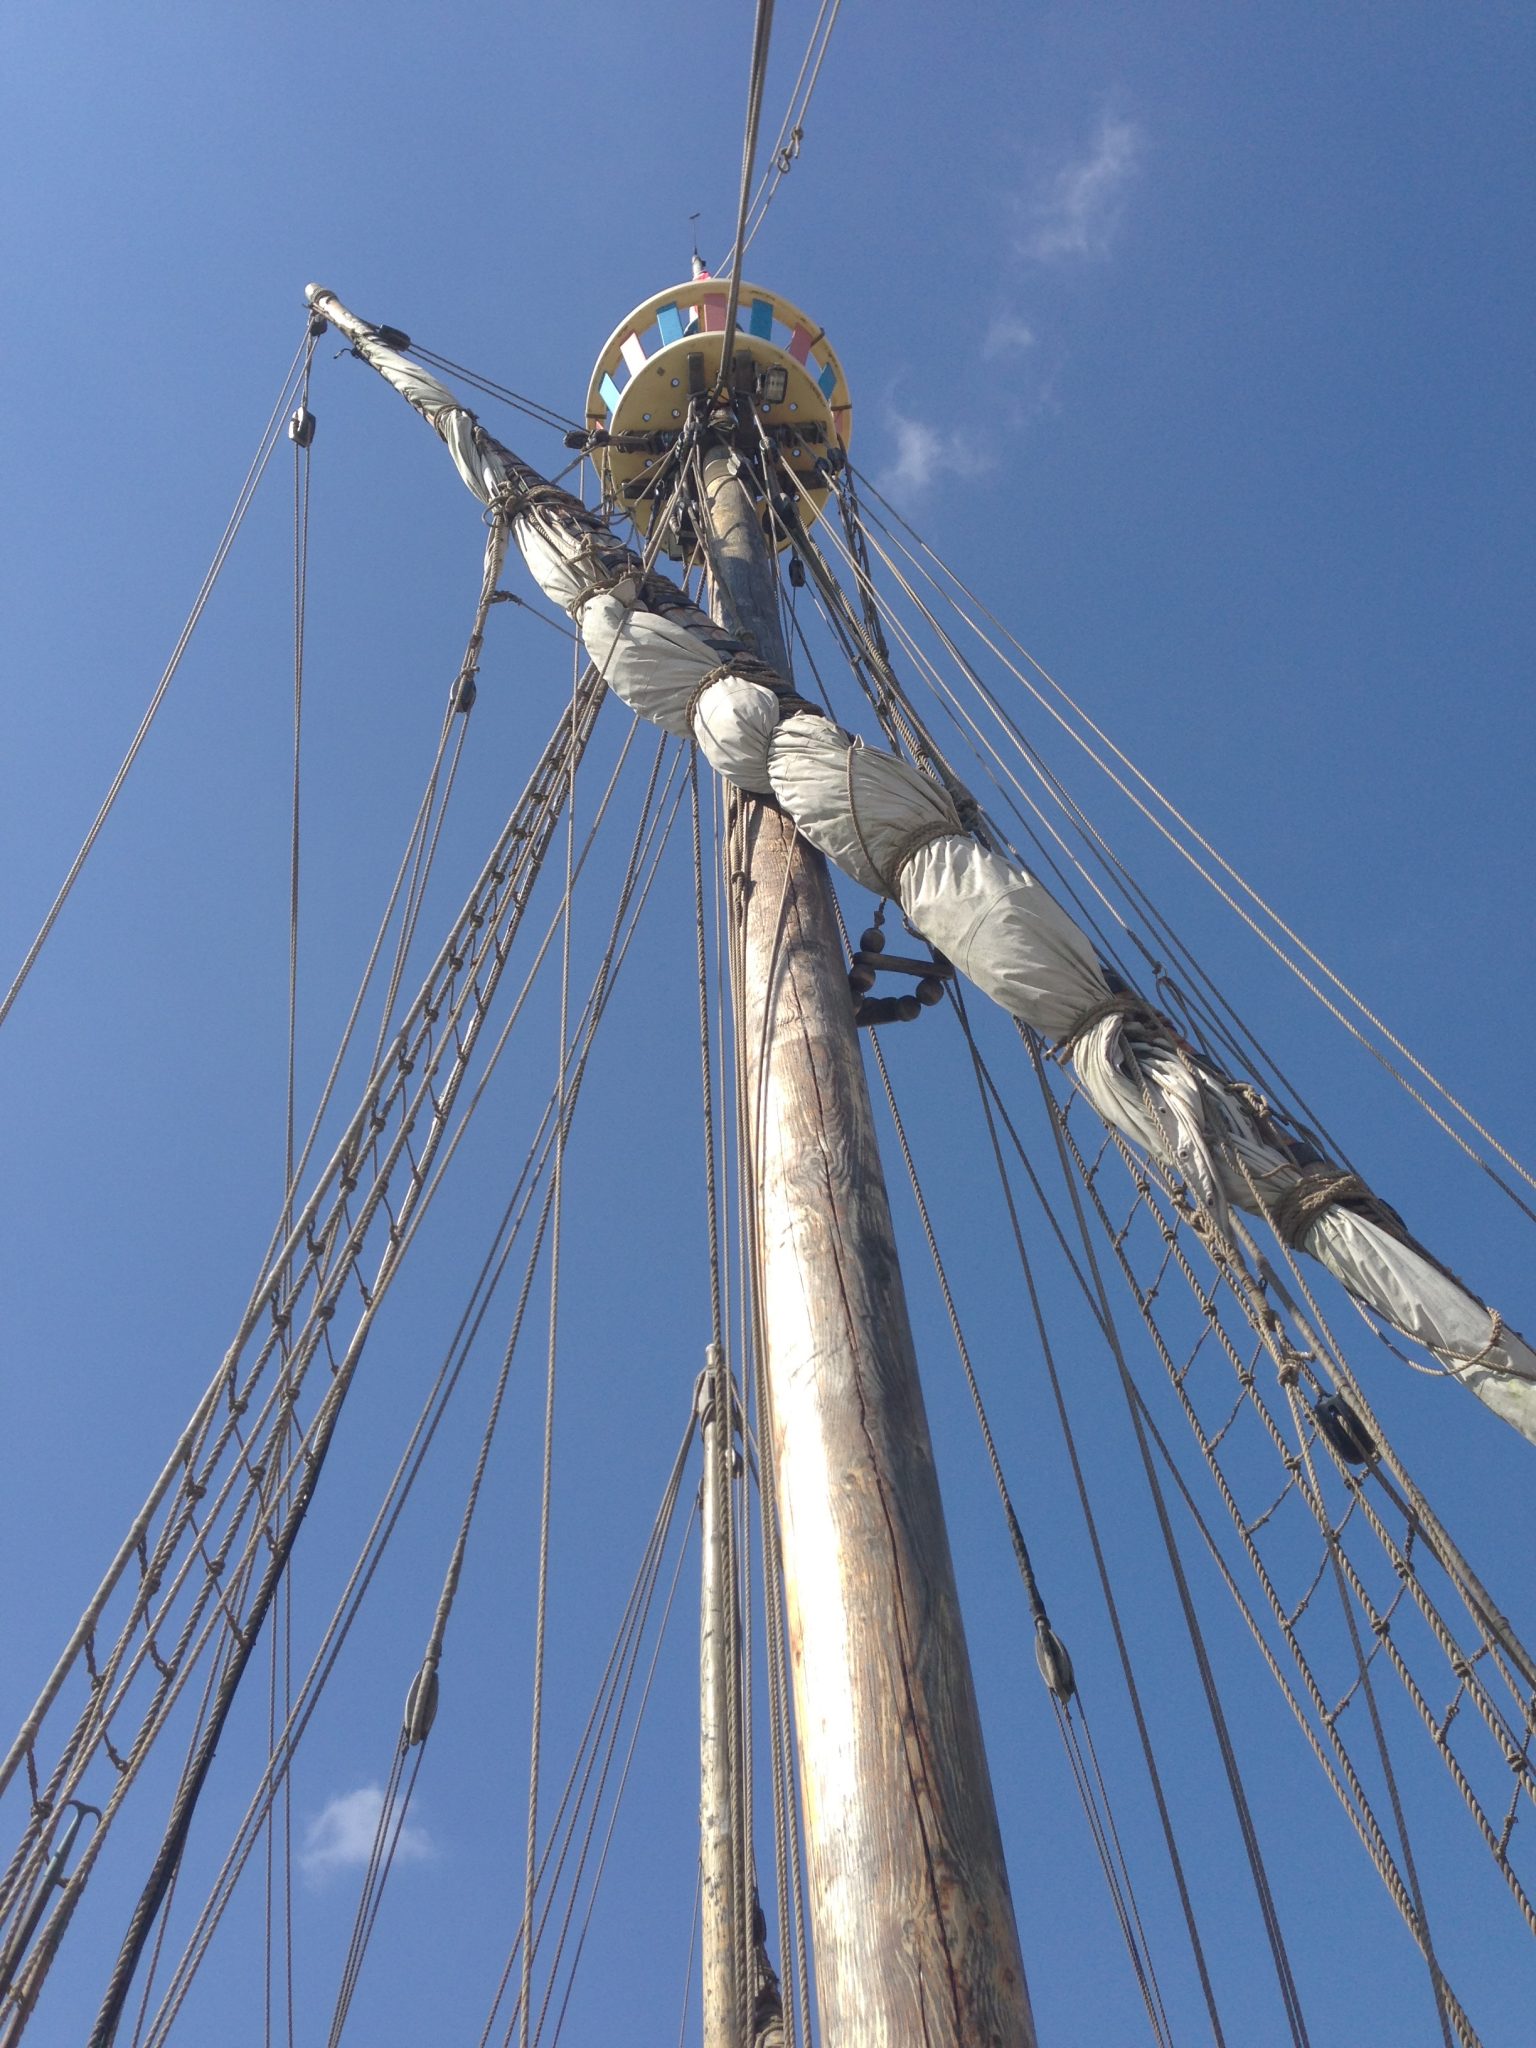 Sailing ship - main mast and rigging